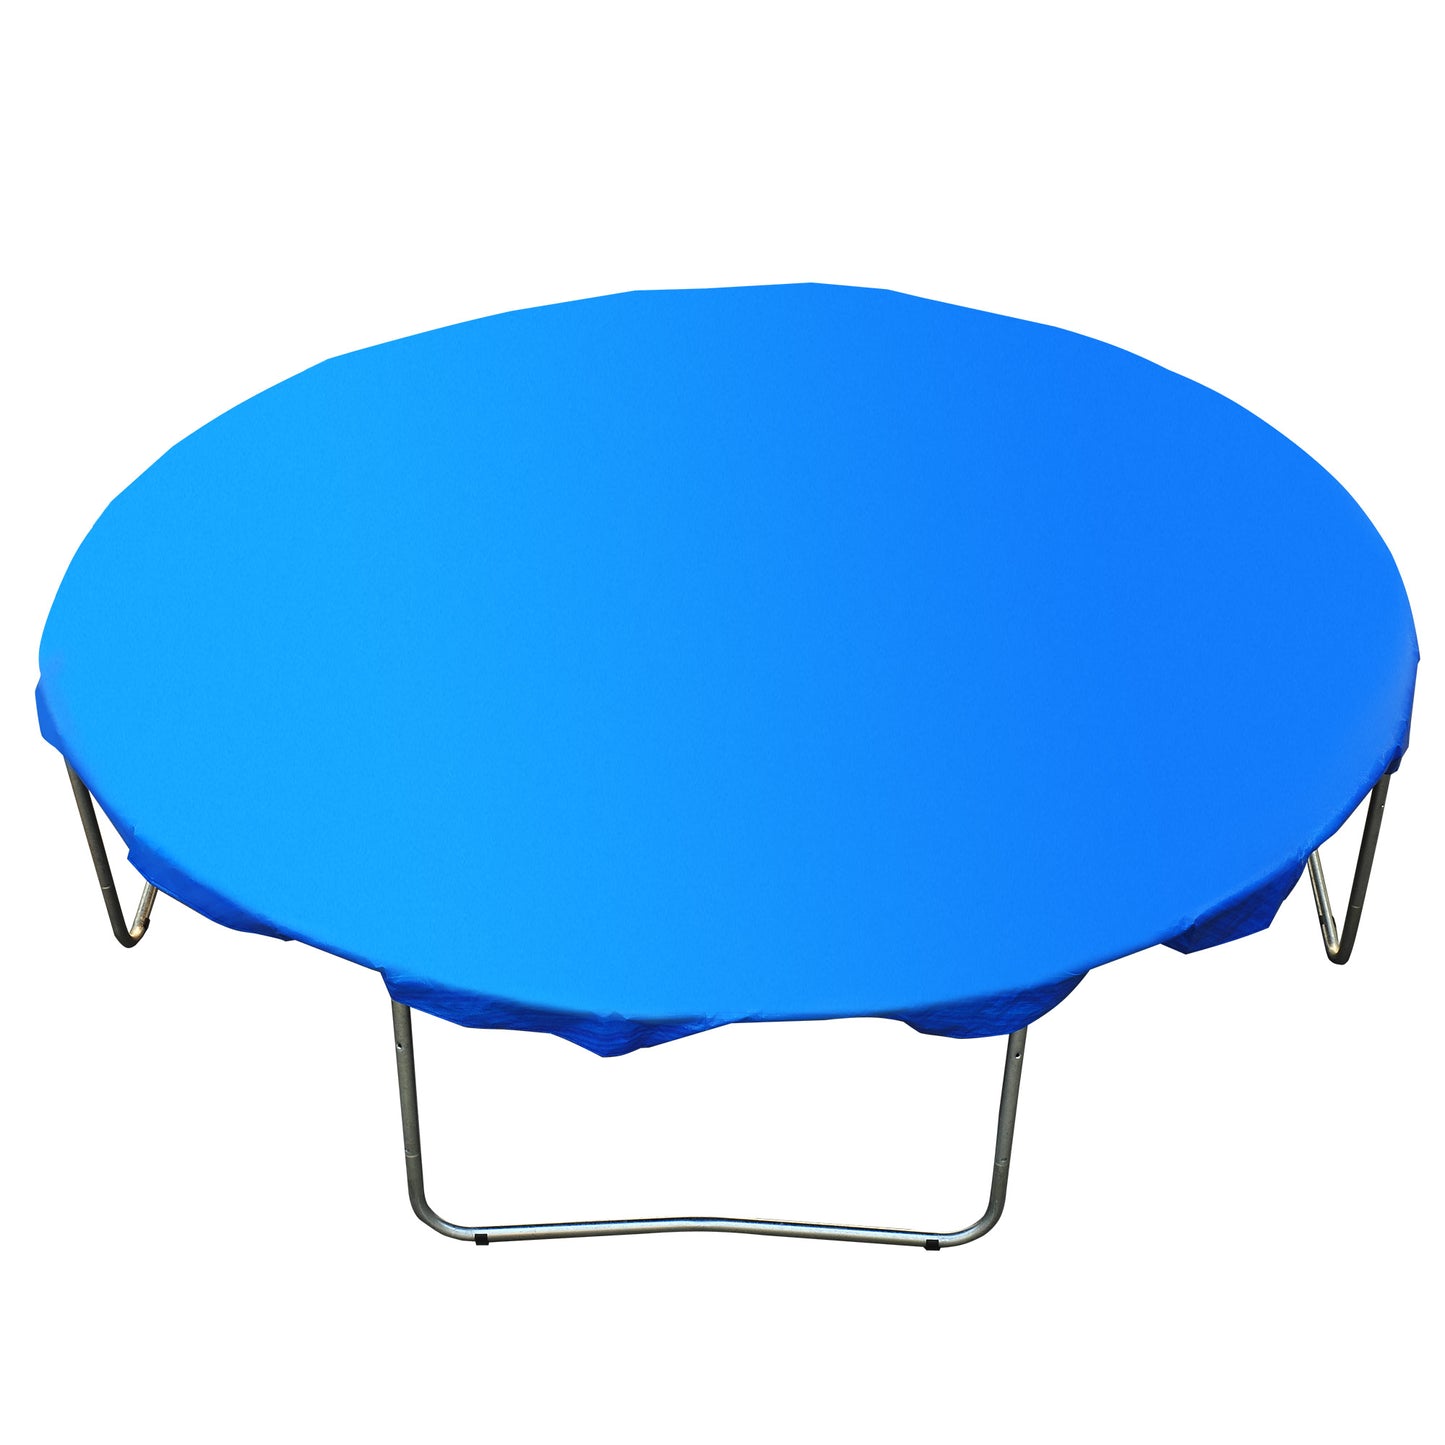 HOMCOM Funda proteccion impermeable para cama elastica trampolines, diametro ø 244cm, Color AZUL